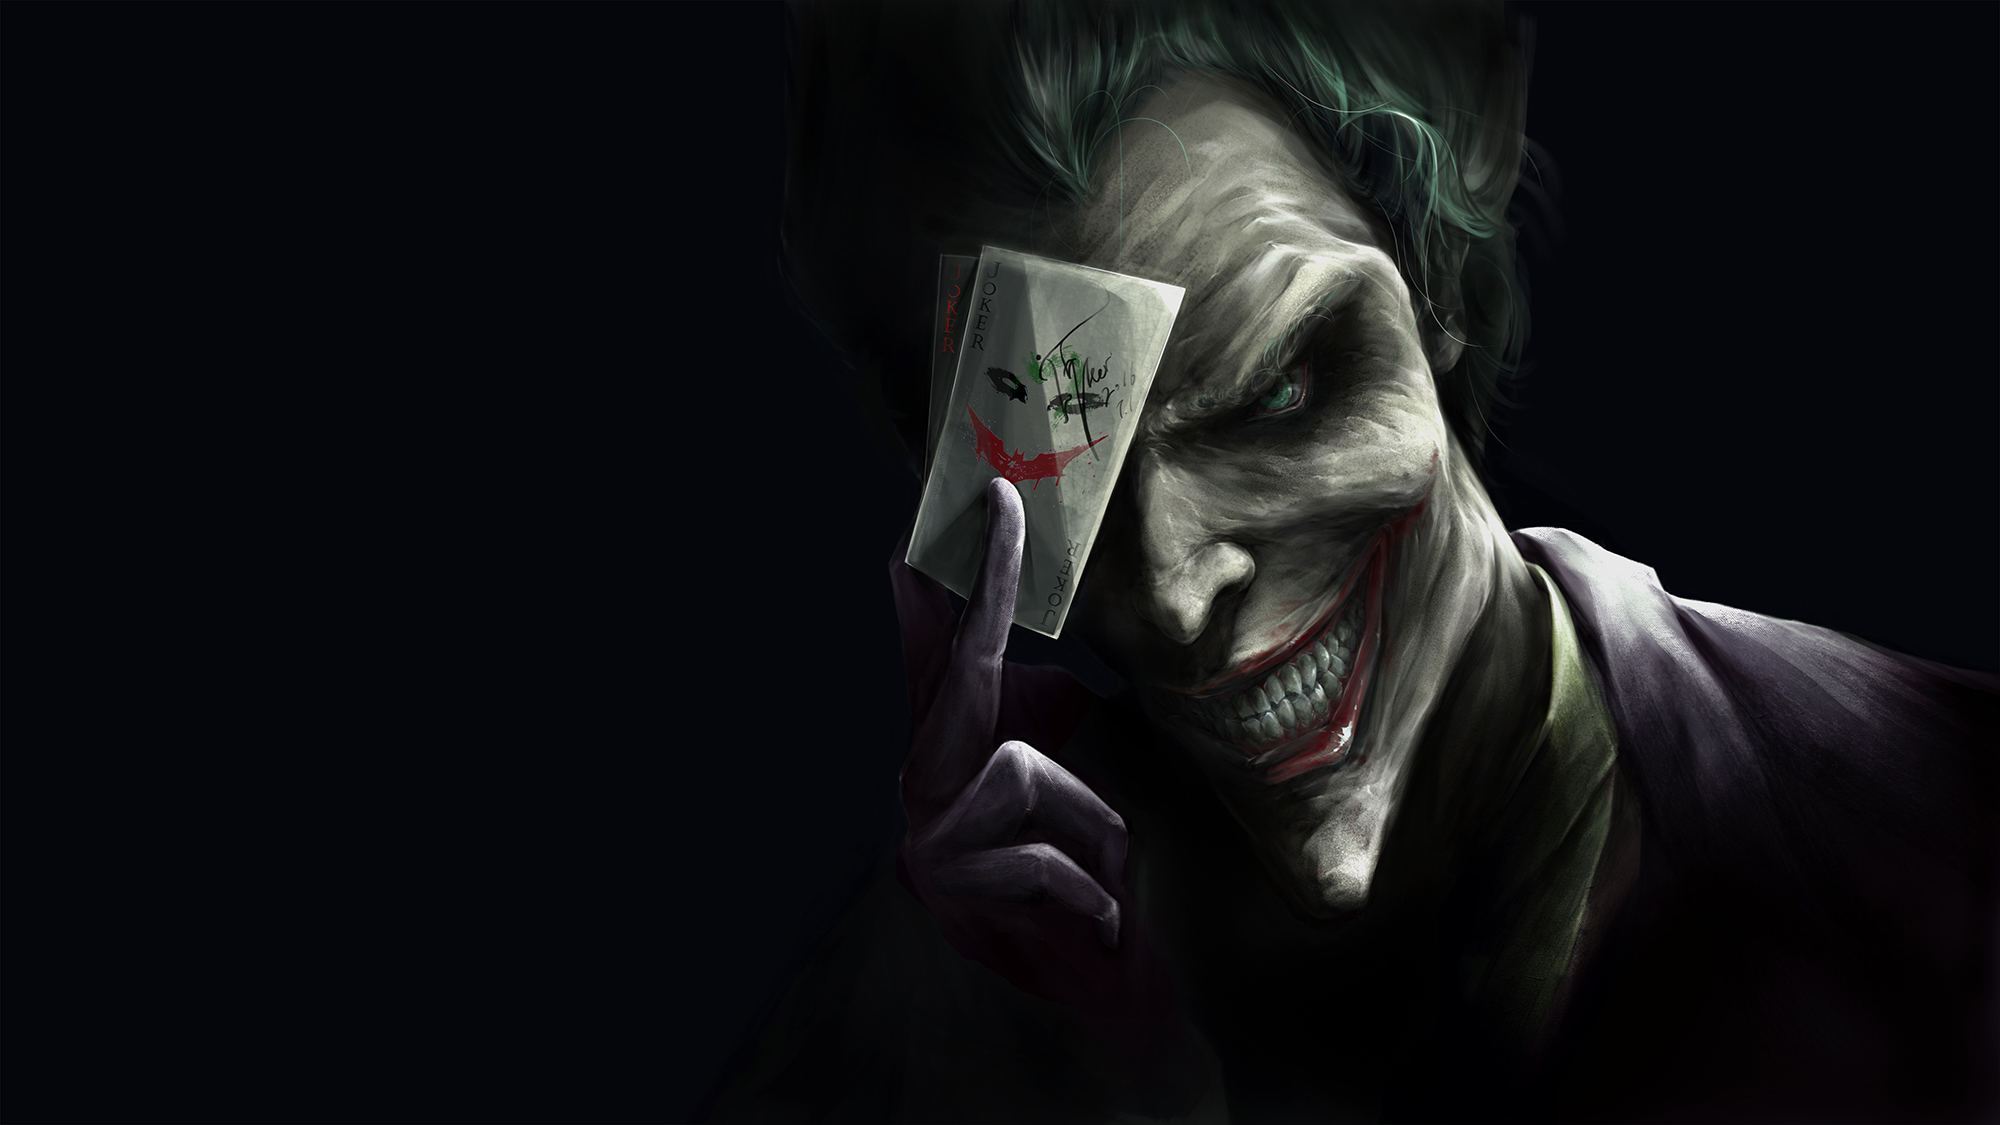  Joker  Card  Trump HD  Superheroes 4k Wallpapers  Images 